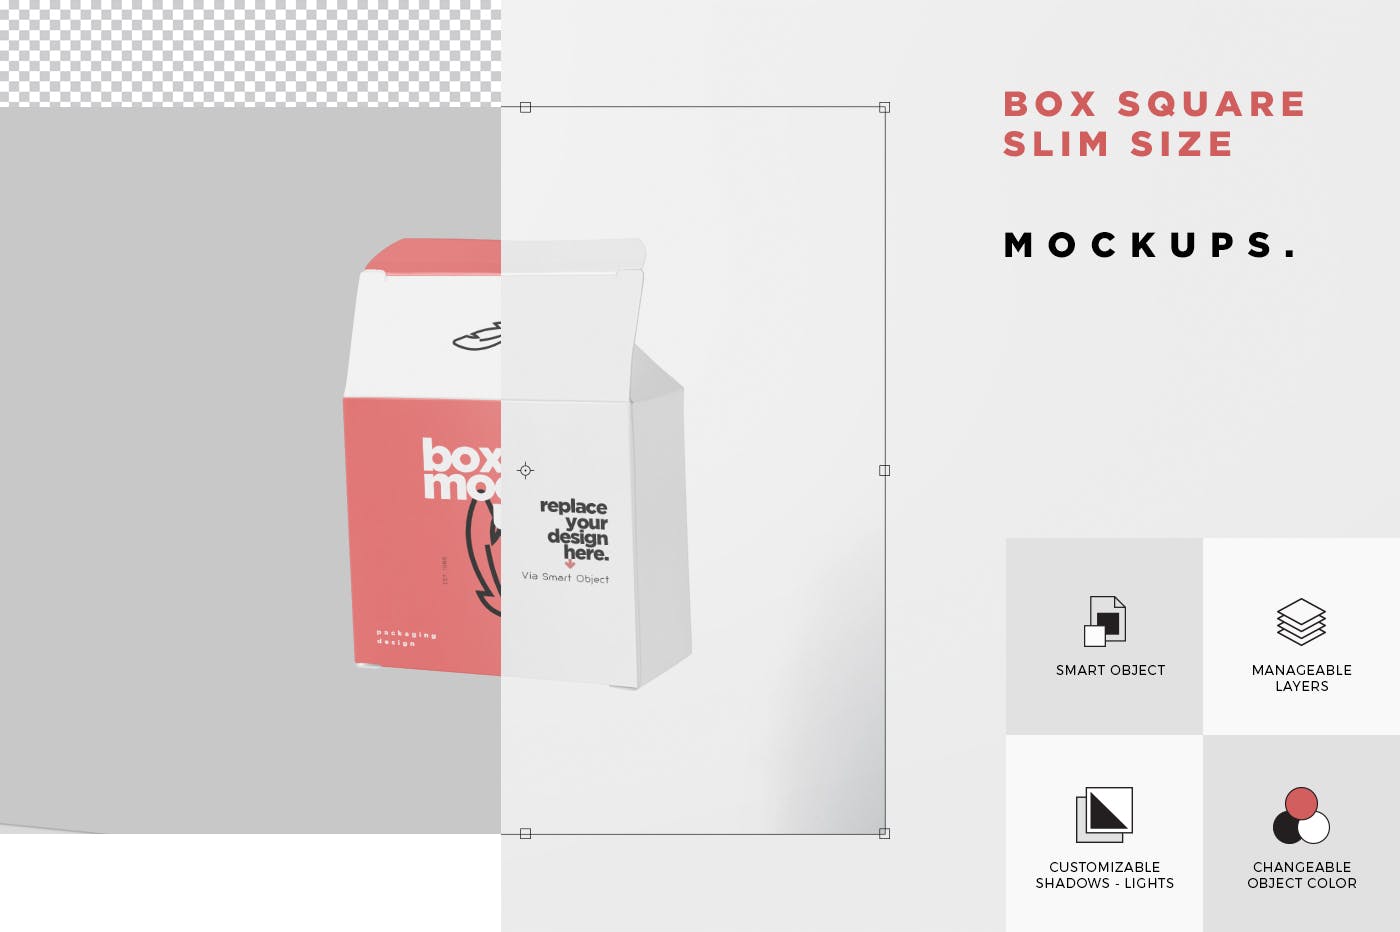 扁平方形包装盒外观设计效果图非凡图库精选 Box Mockup – Square Slim Size插图(6)